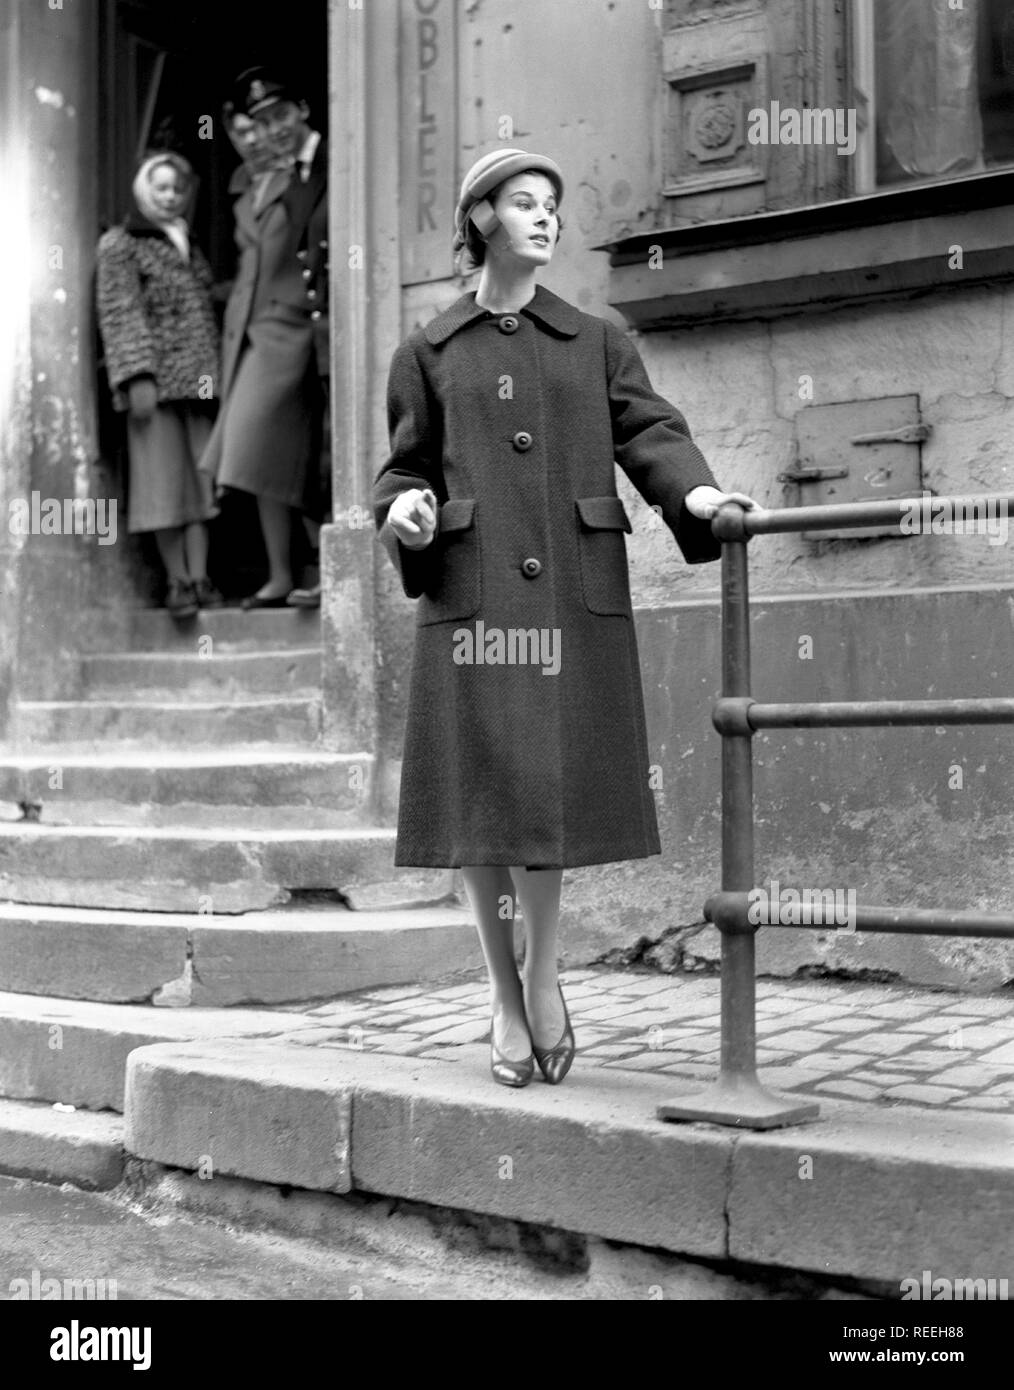 À la mode dans les années 1950. Une jeune femme porte une robe typique des  années 50. Elle pose dans la tenue dans une rue. La Suède des années 1950.  Kristoffersson Photo